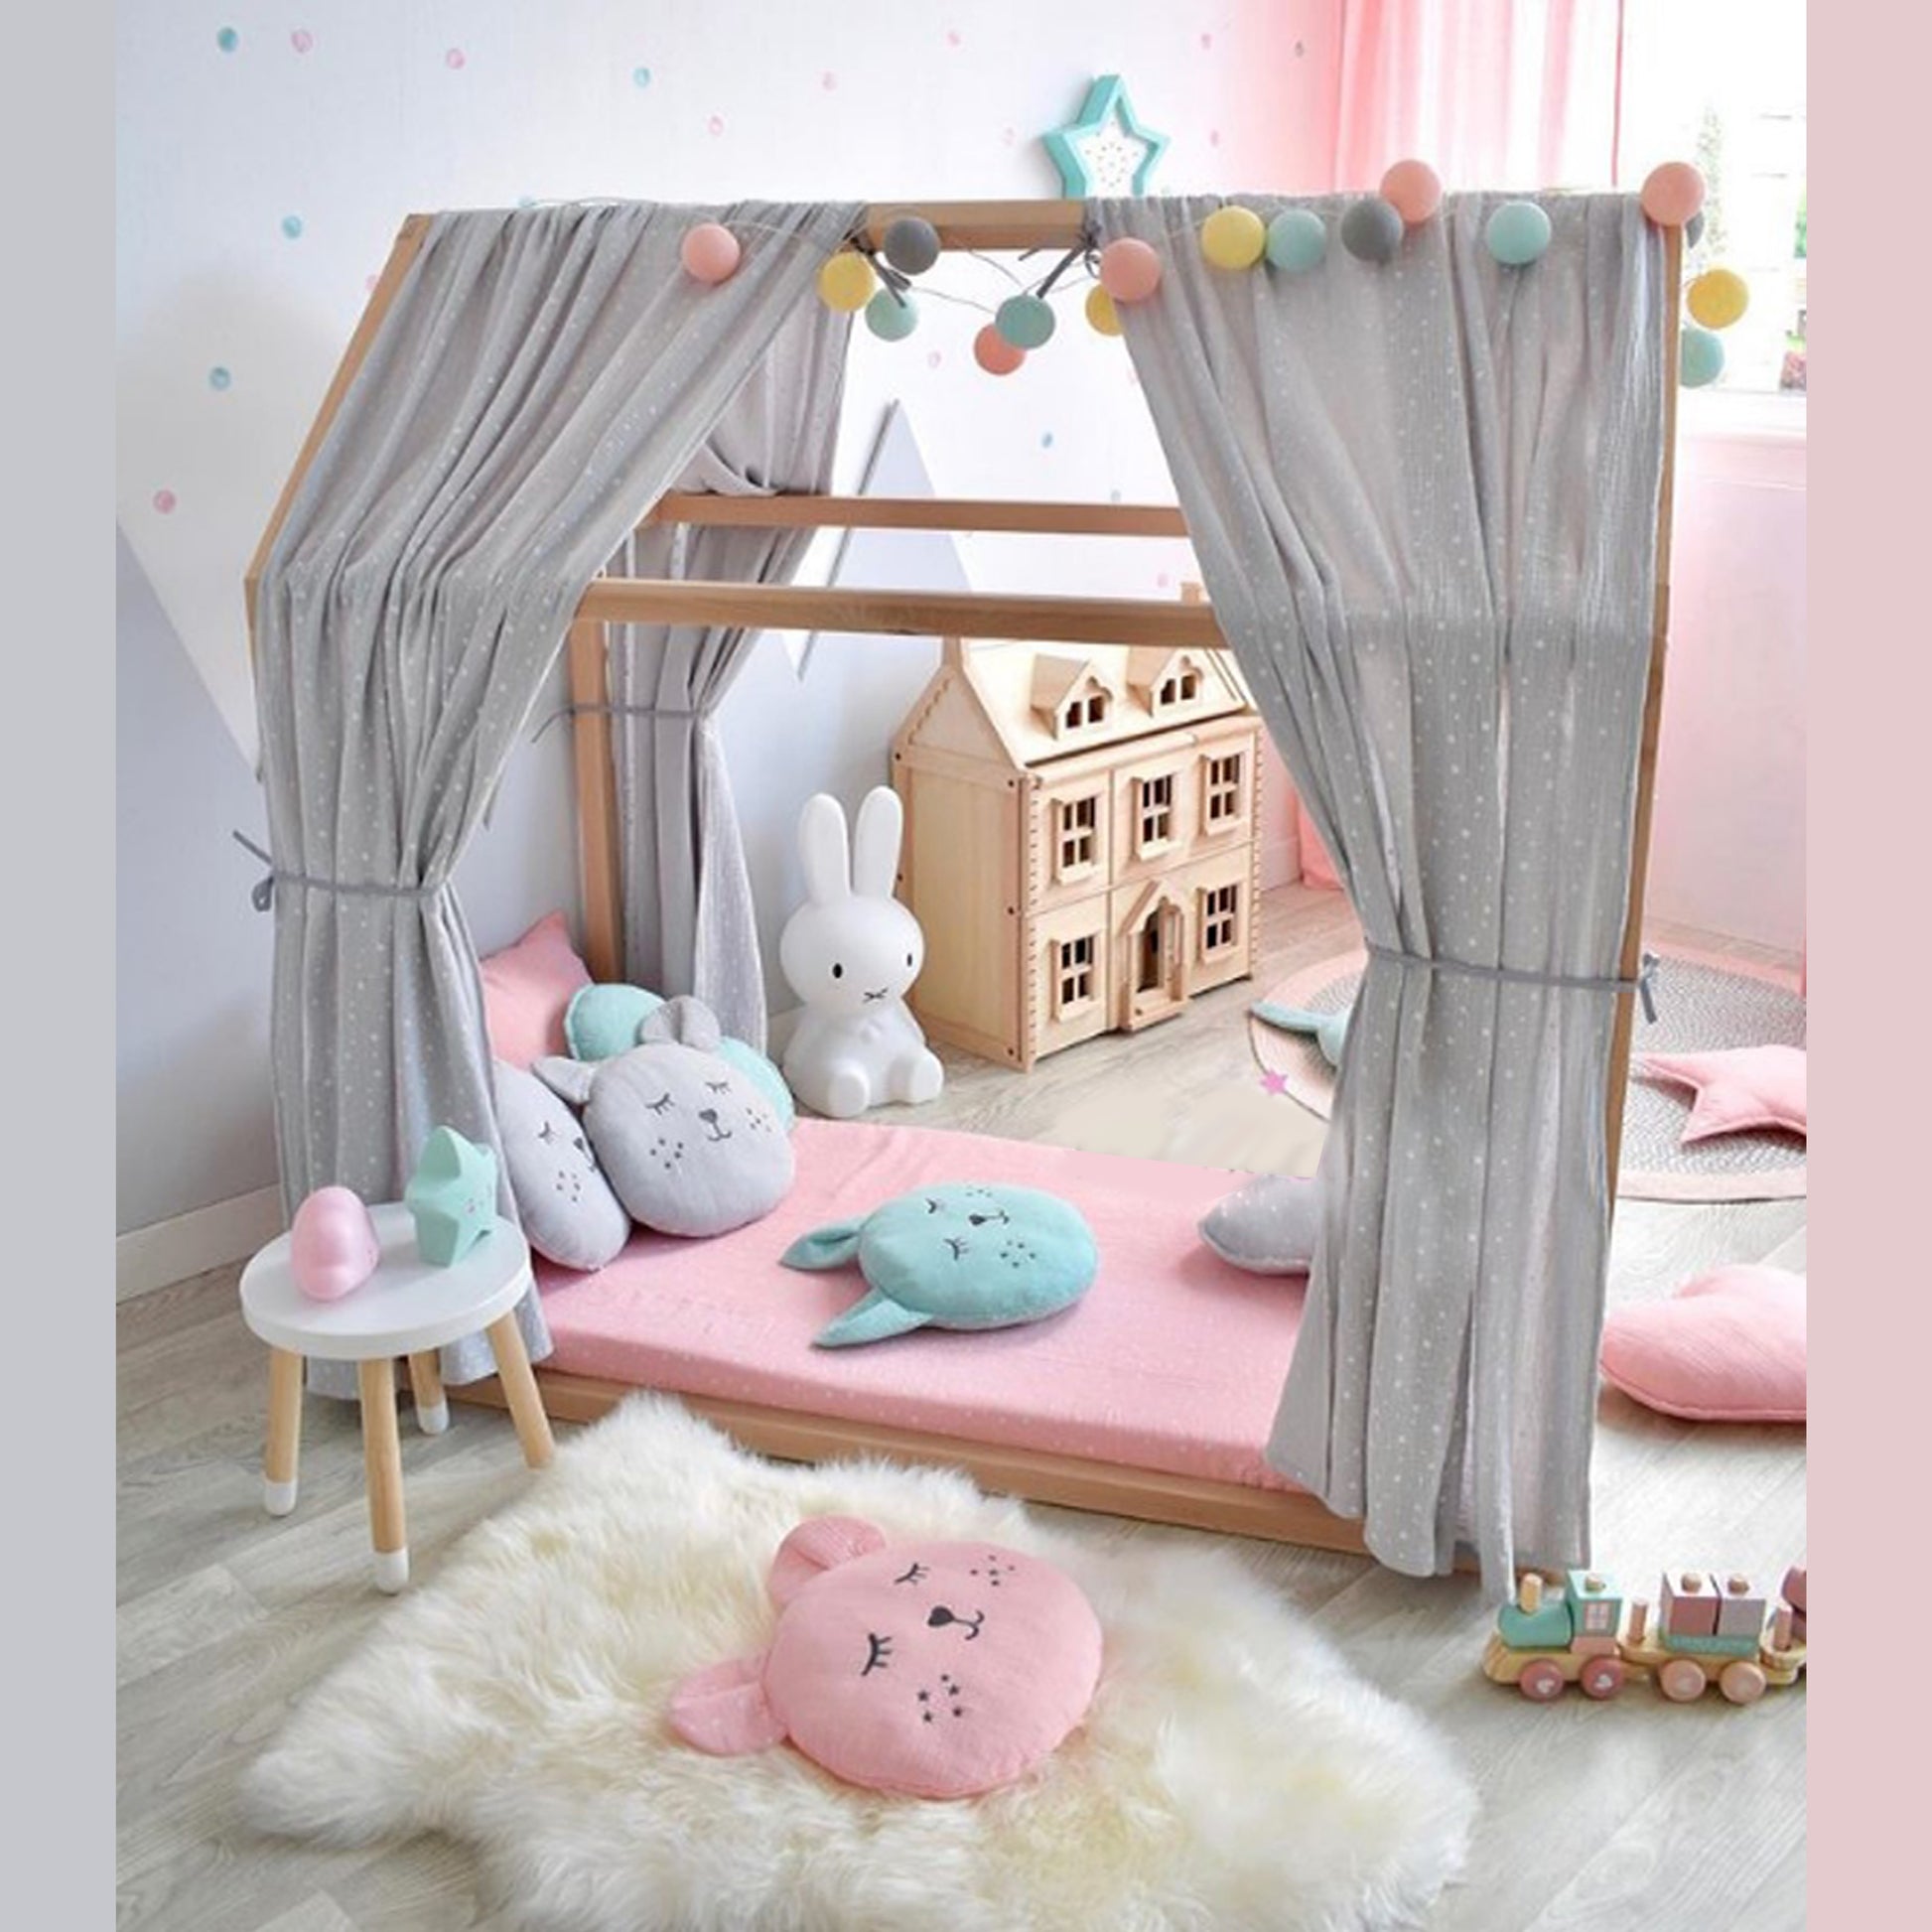 Tipee Cuna Montessori tienda cama cabaña para niños en madera 80x160cm